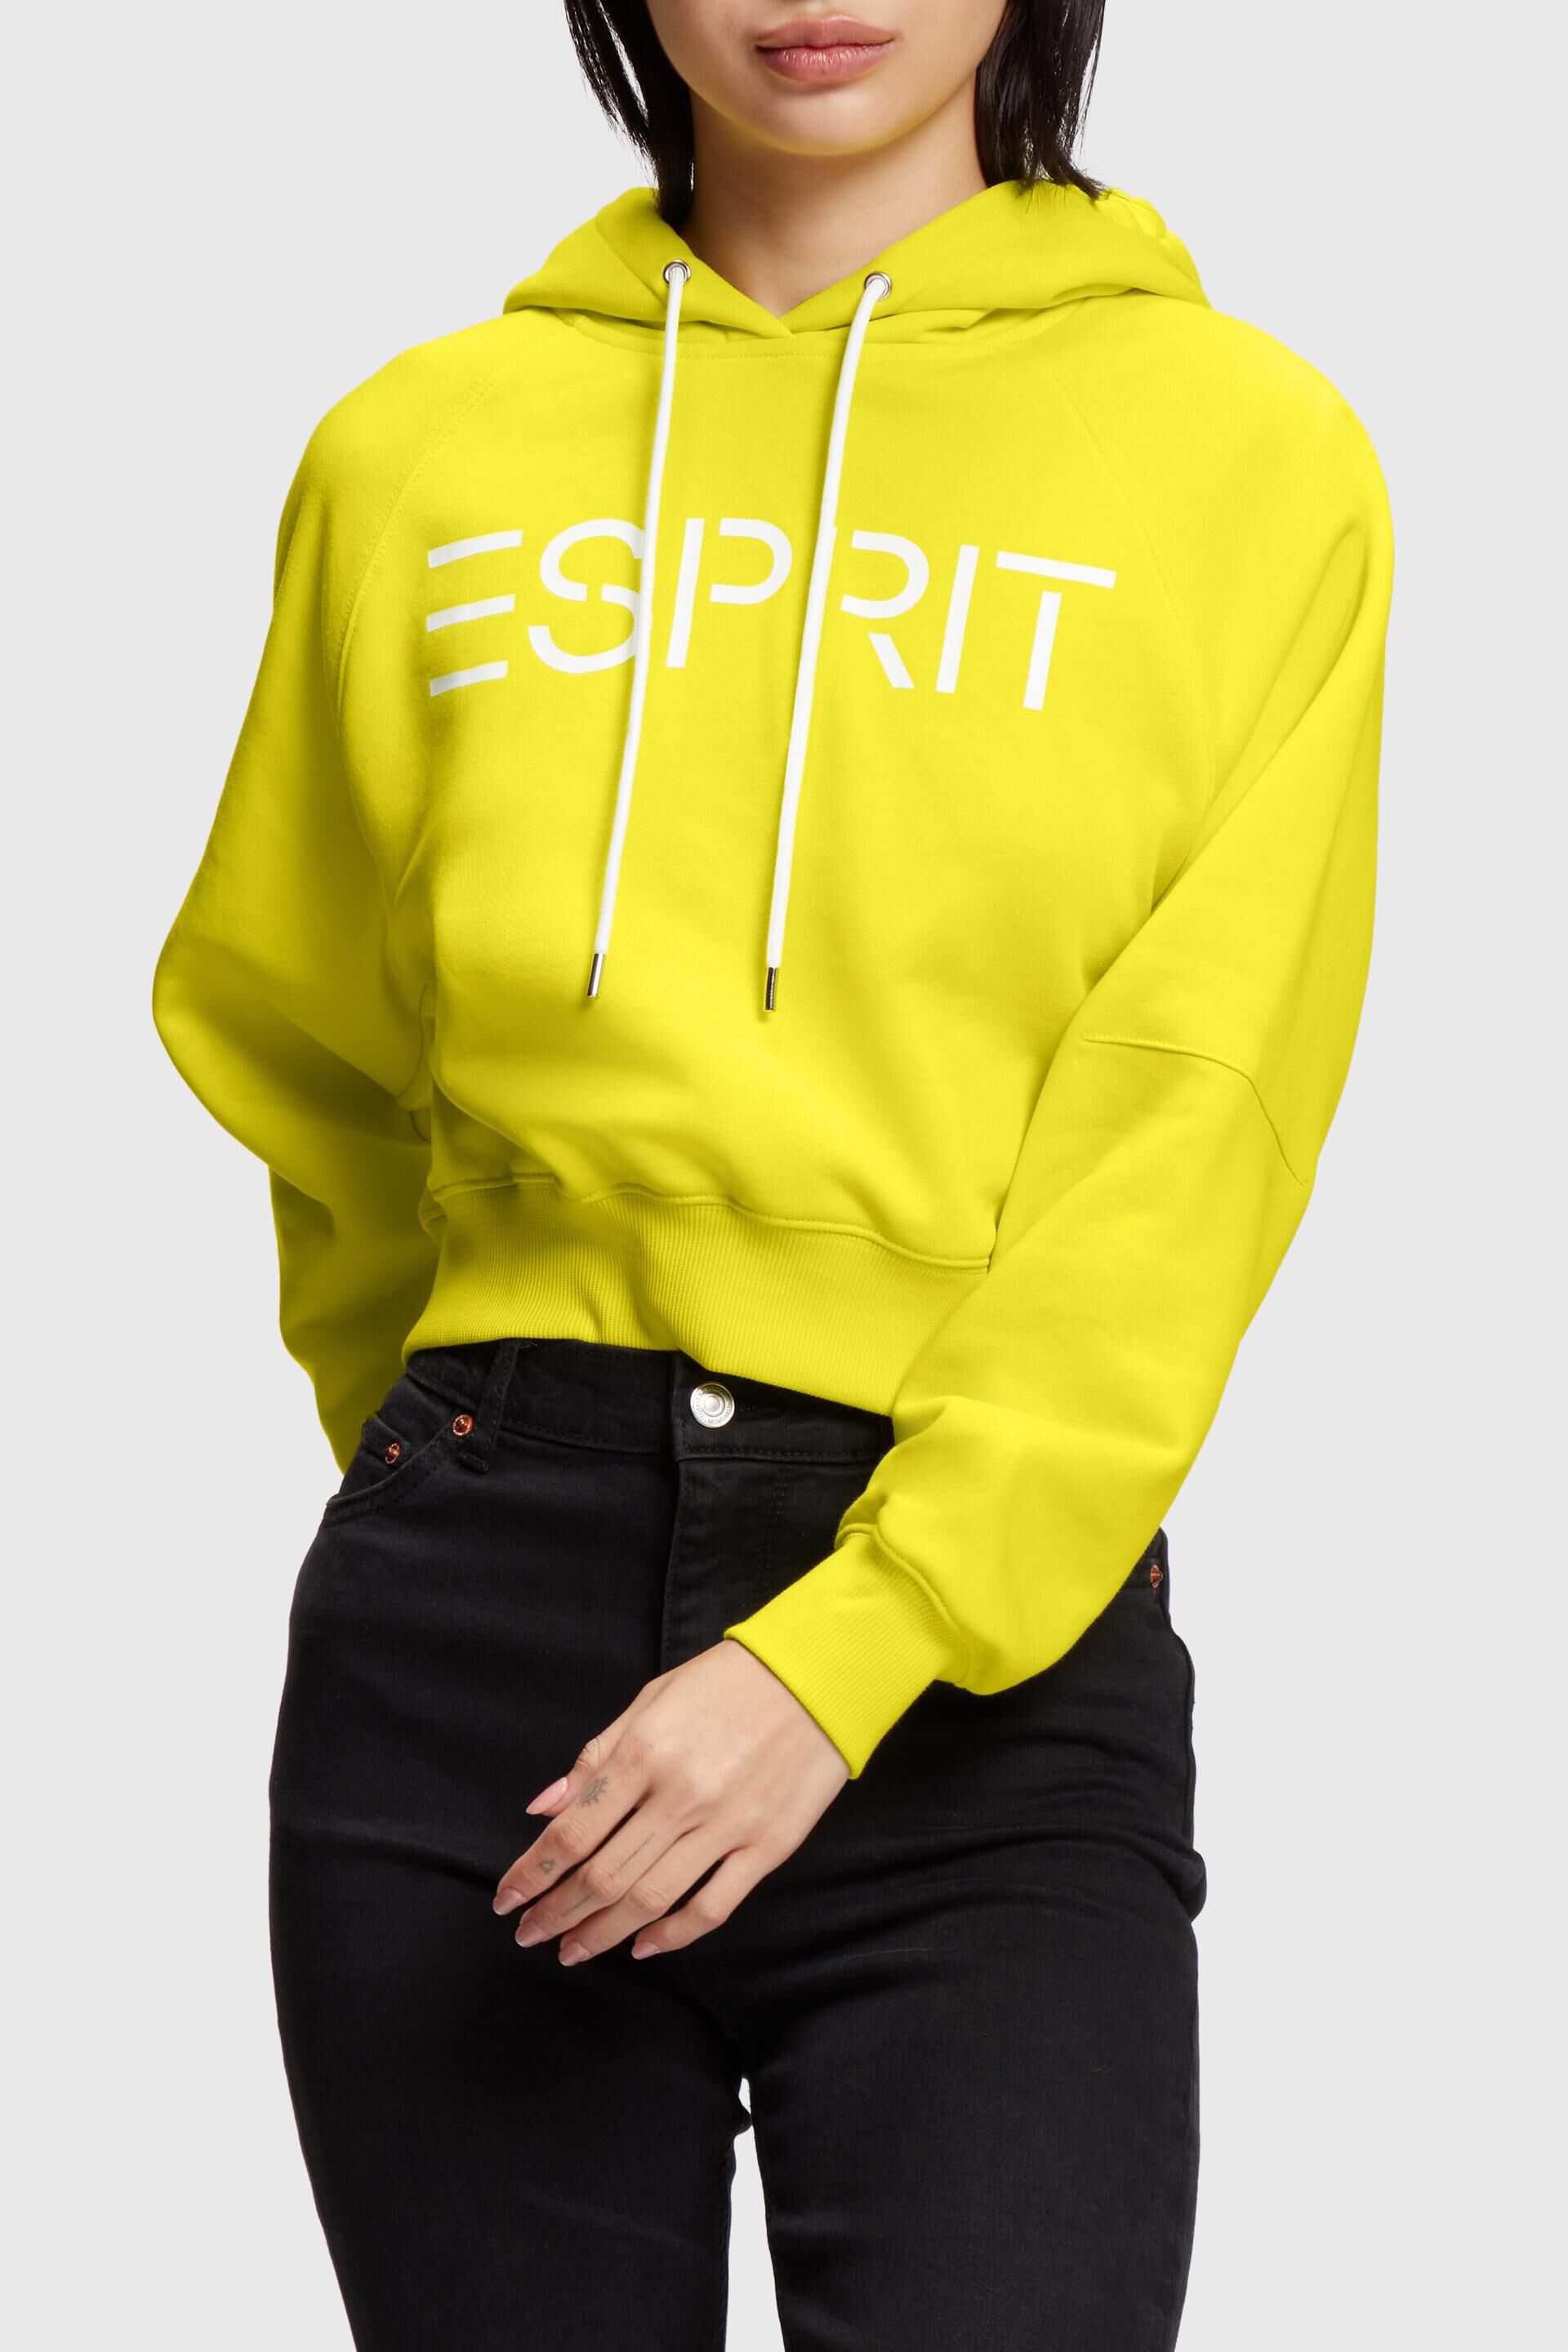 Esprit Cropped logo hoodie